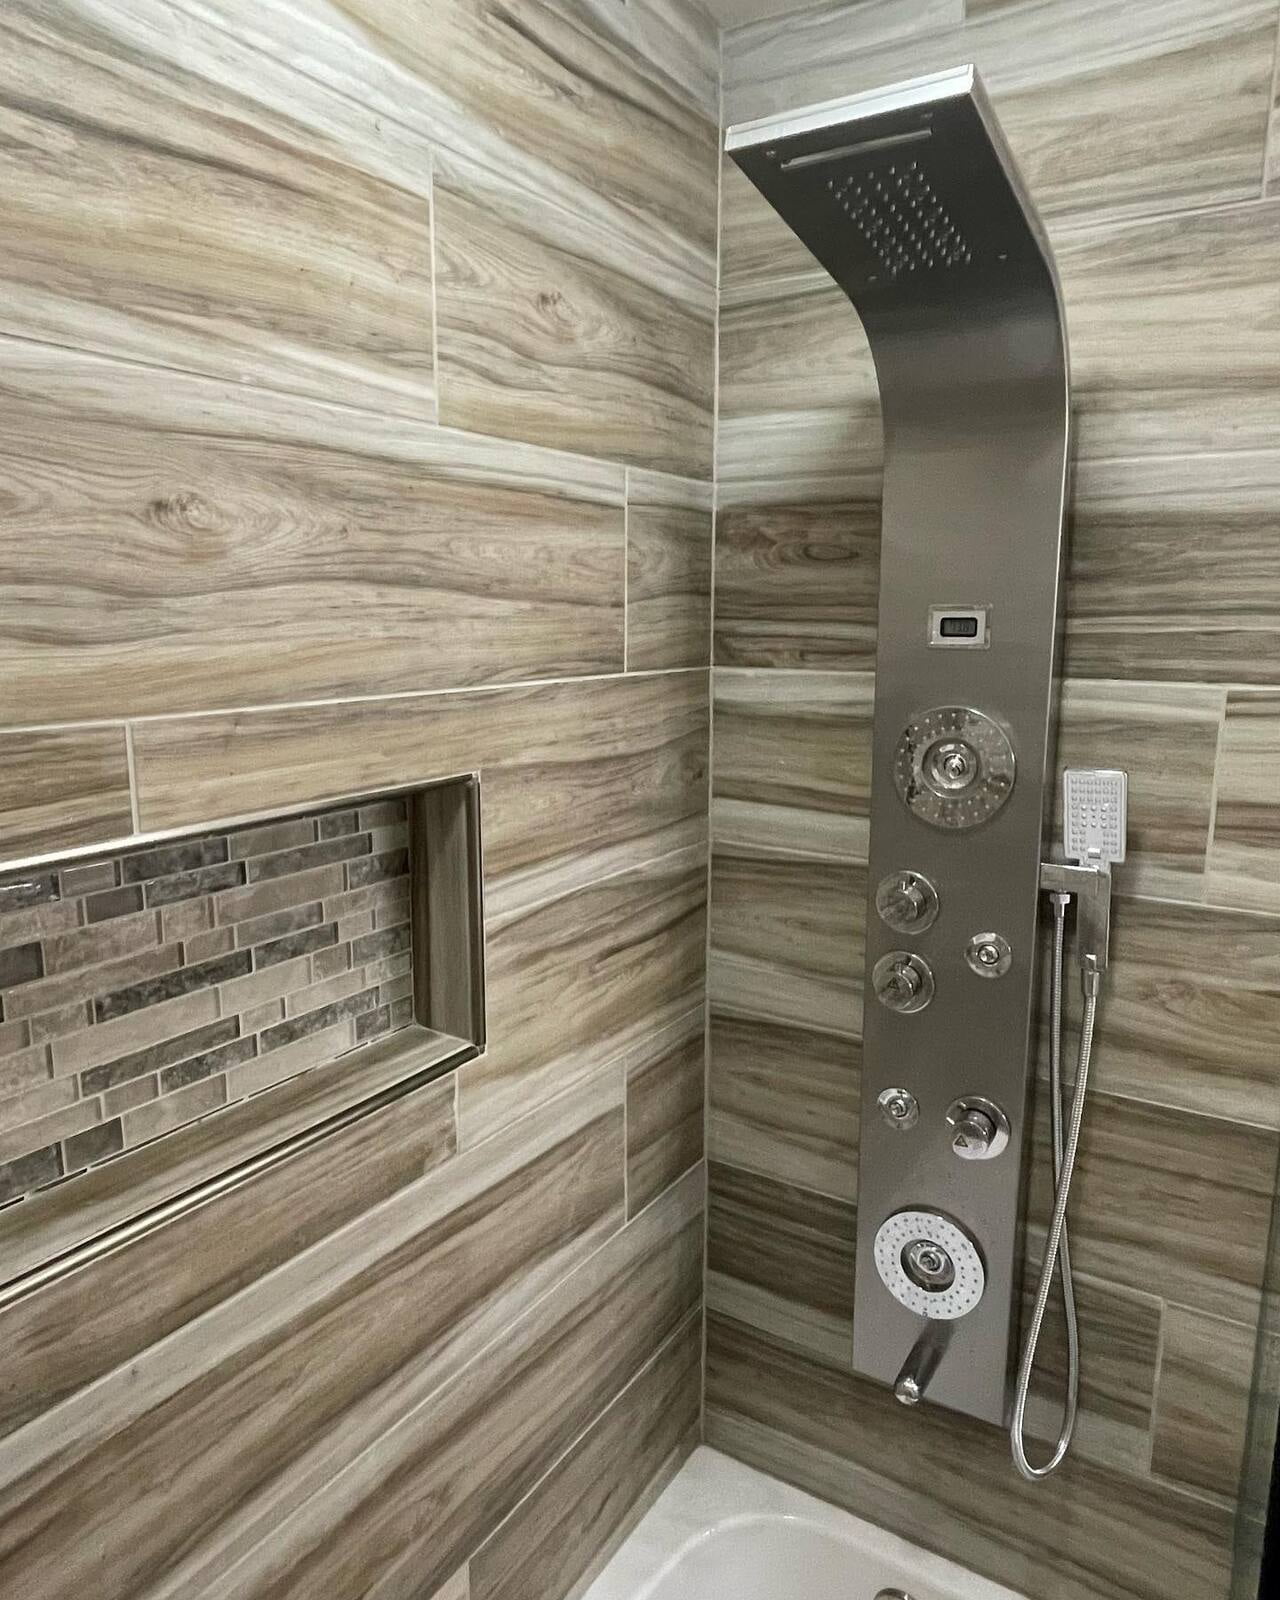 New shower remodel job. Tile and shower hardware.